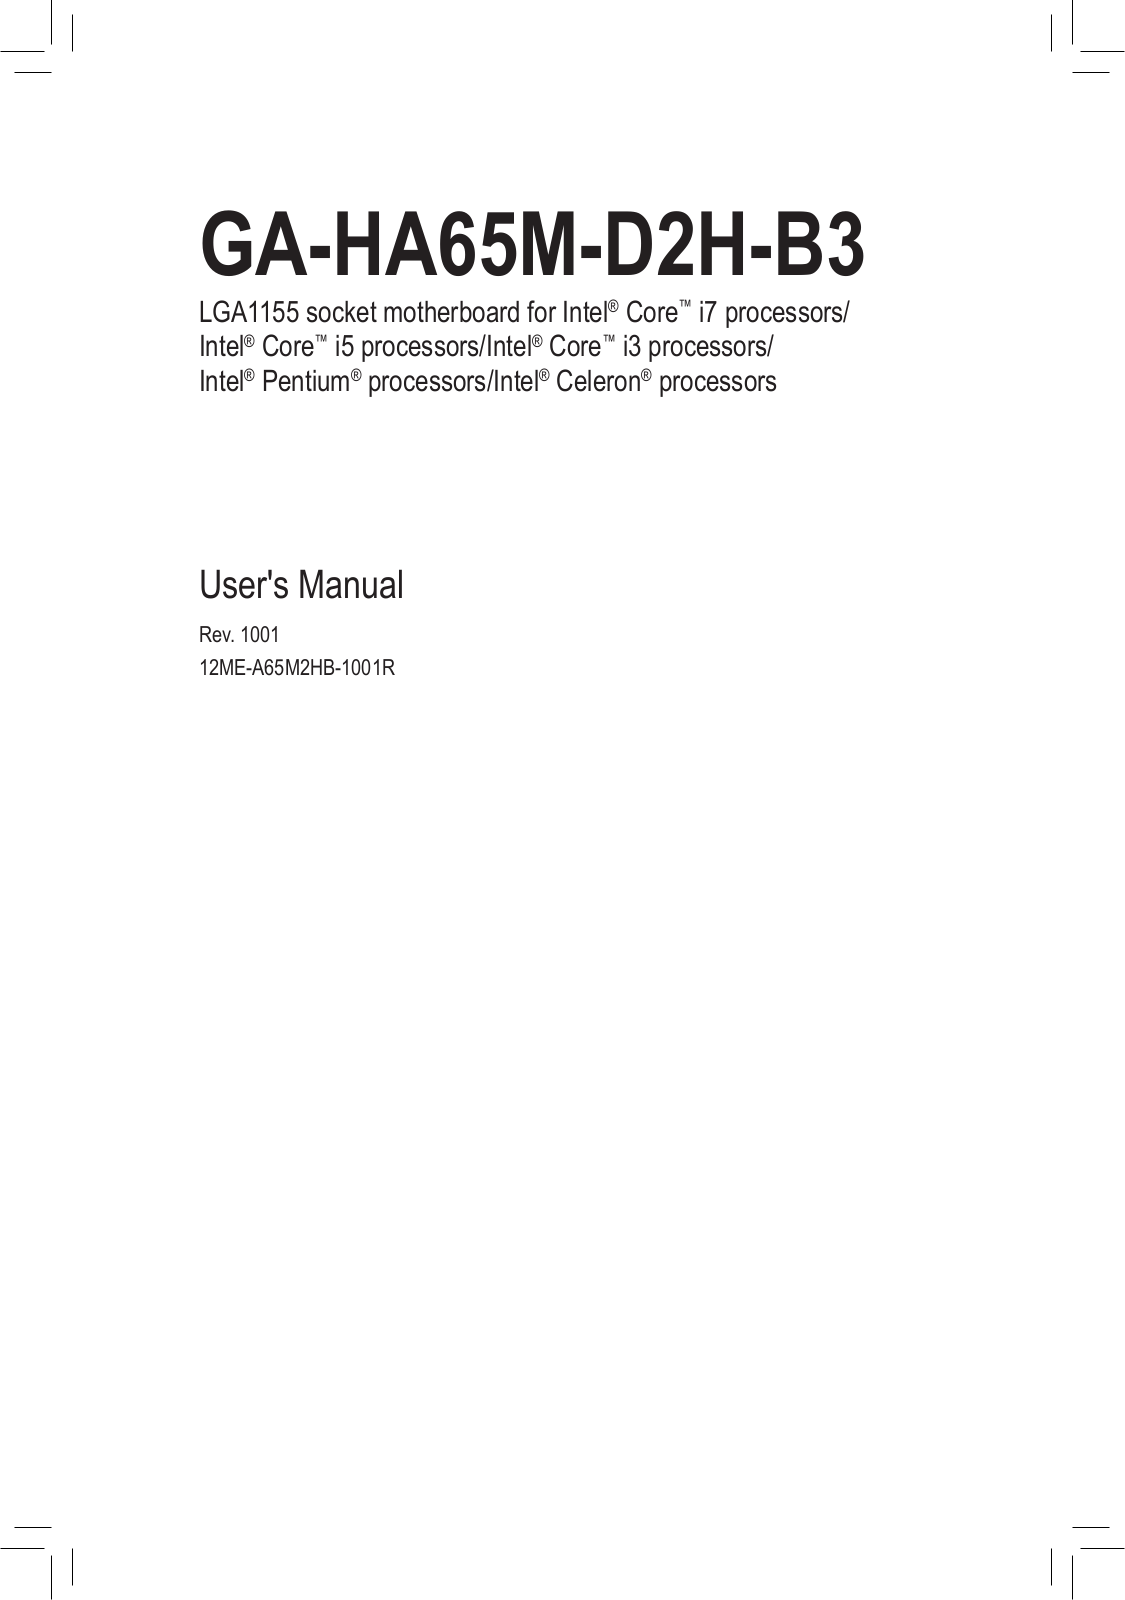 Gigabyte GA-HA65M-D2H-B3 (rev. 1.0) User Manual